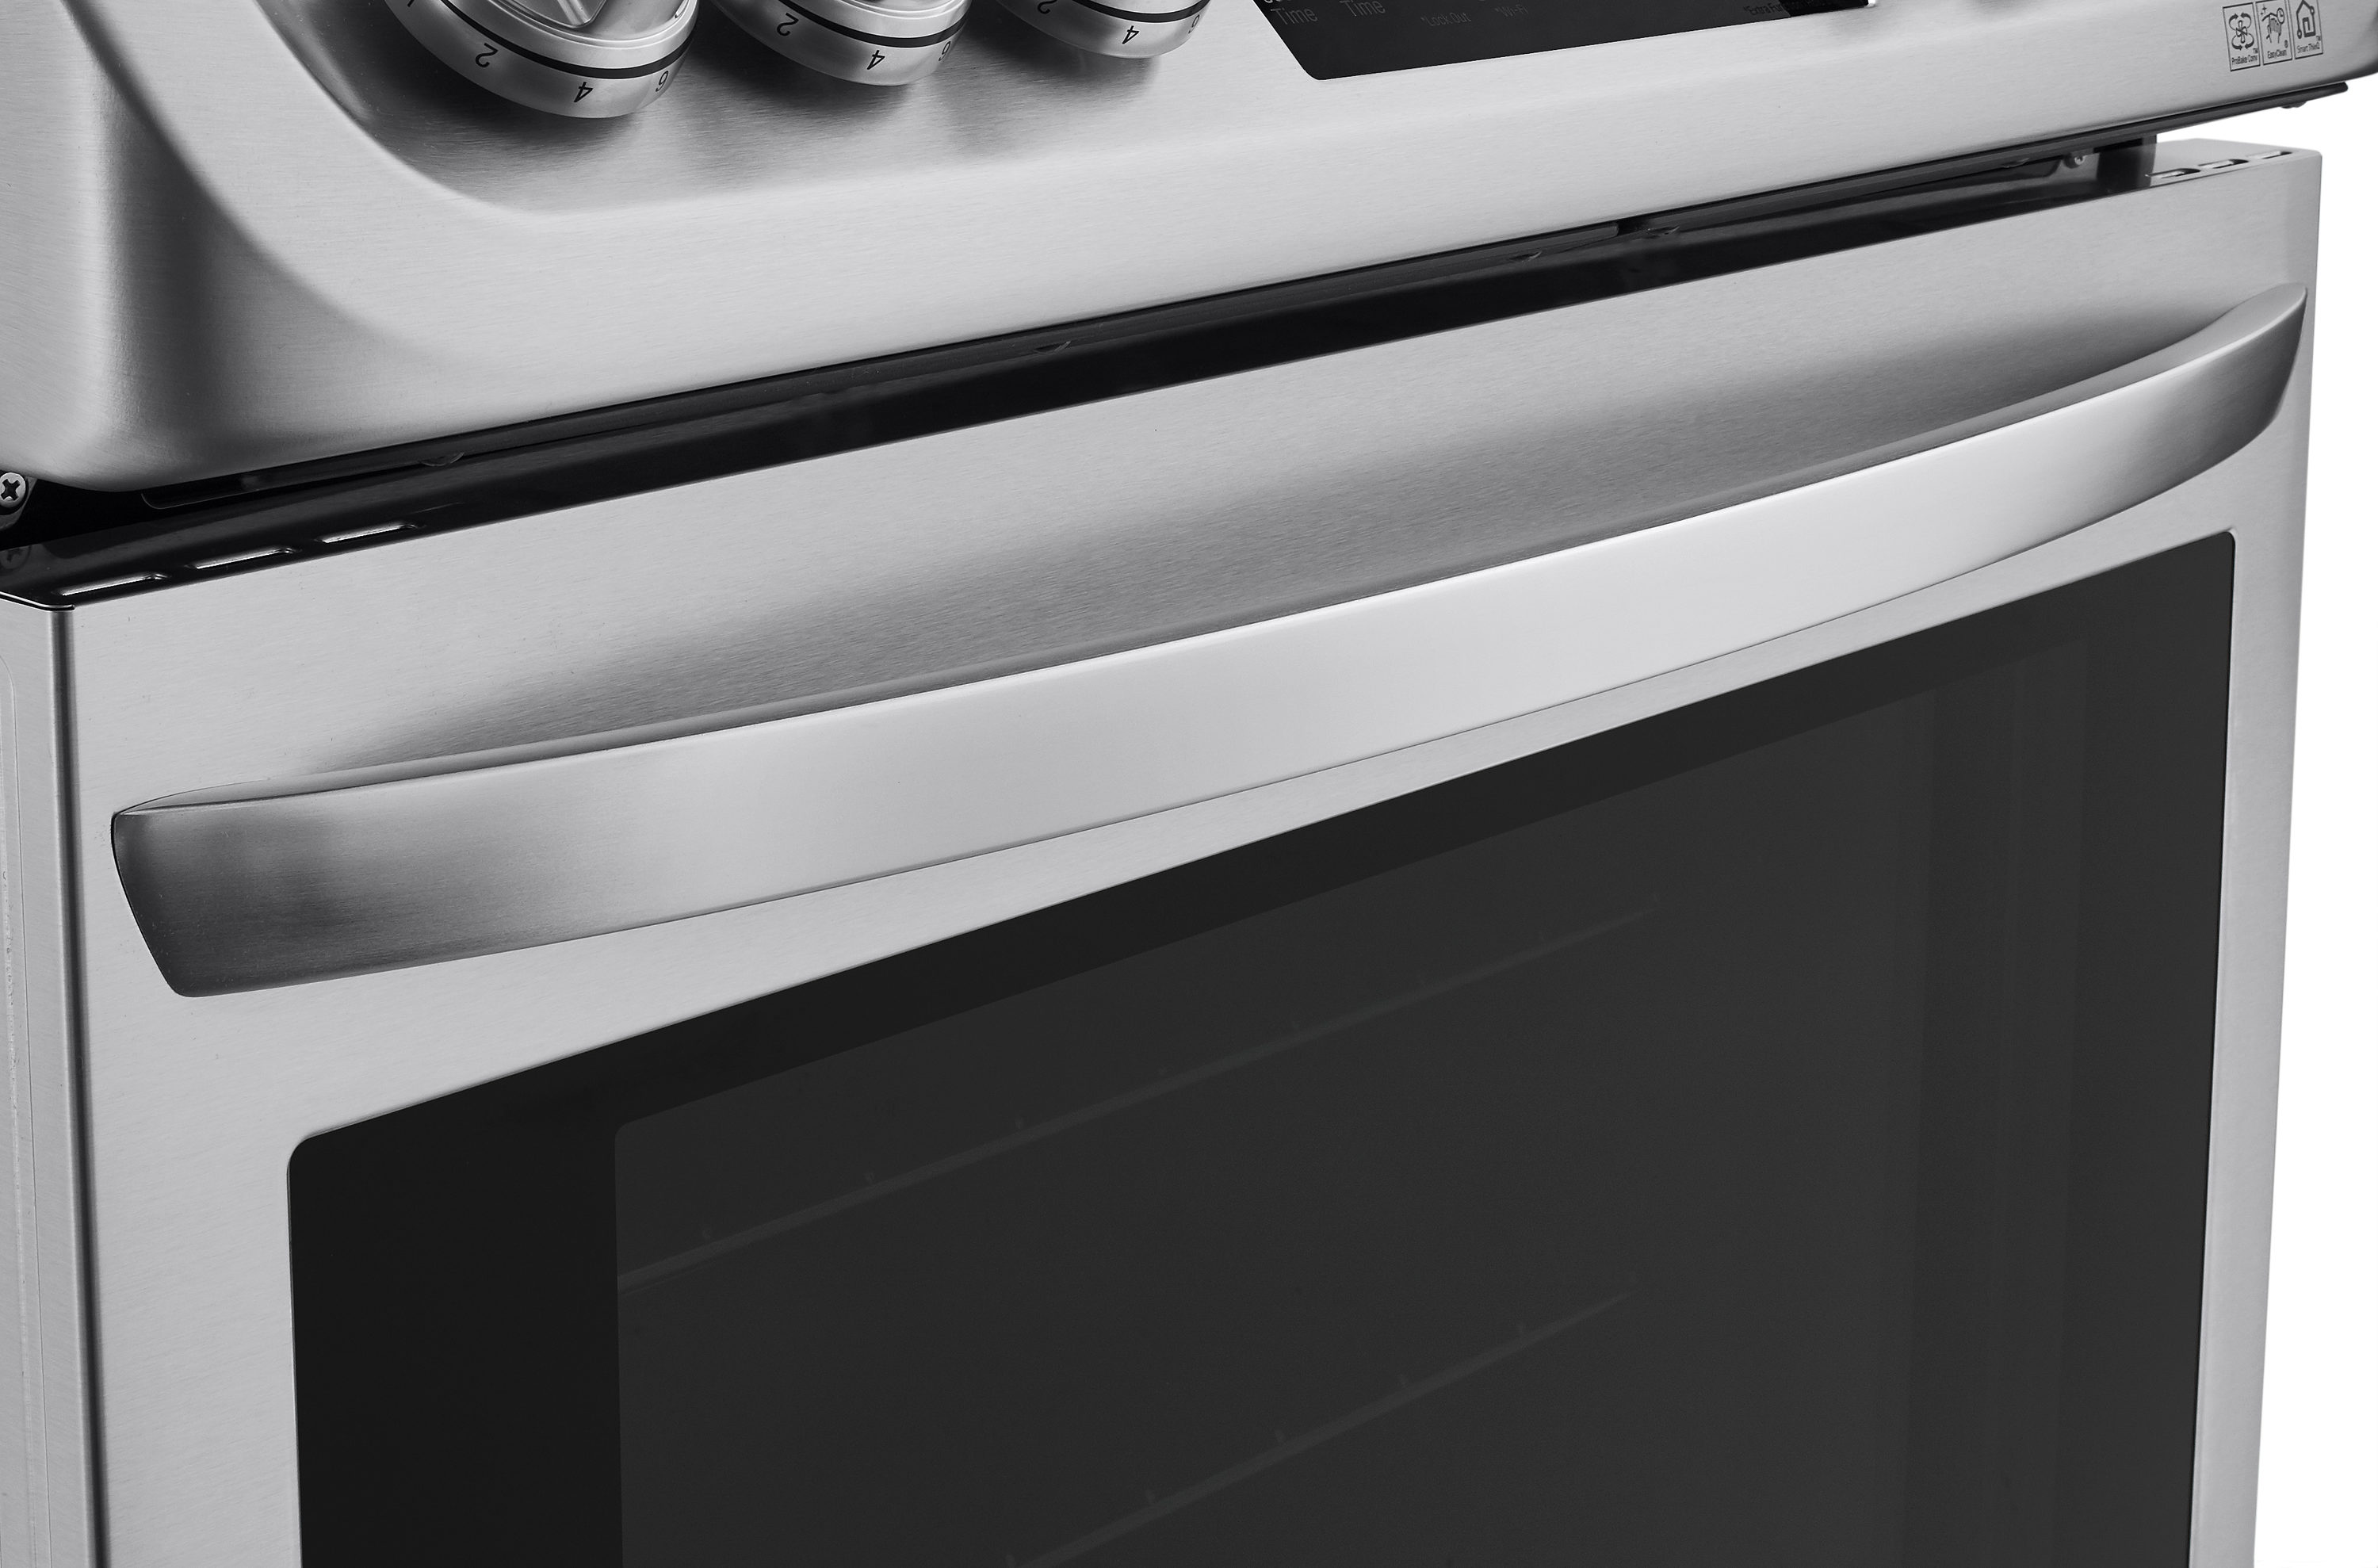 Genlabs Oven Cleaner – Delta Distributing